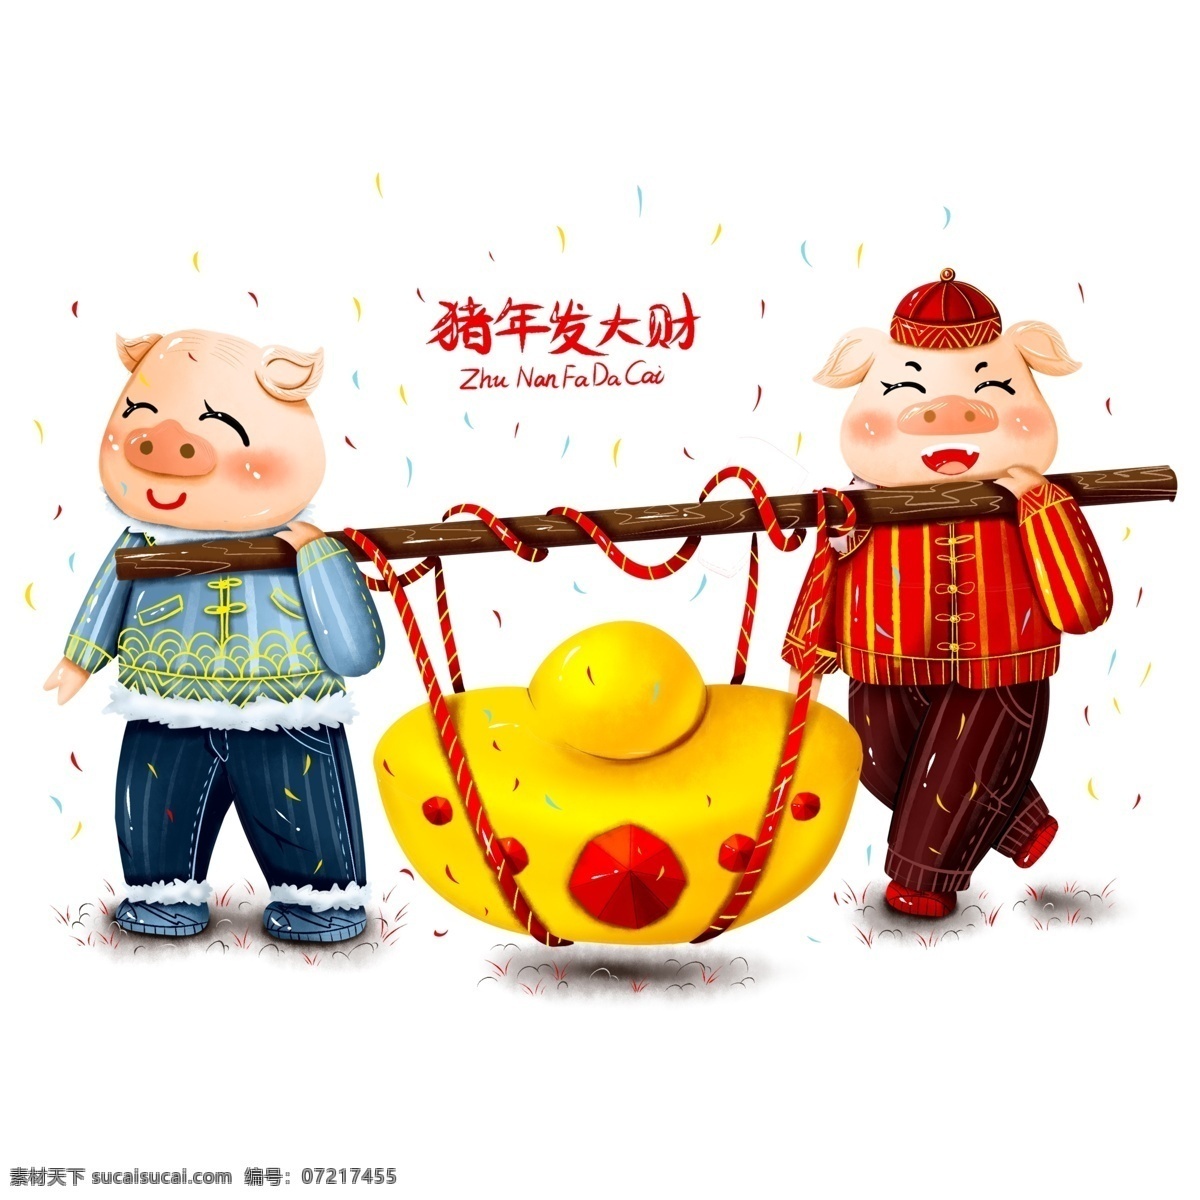 原创 手绘 2019 新年 春节 喜庆 猪年 发大财 元素 海报素材 商用 猪年发财